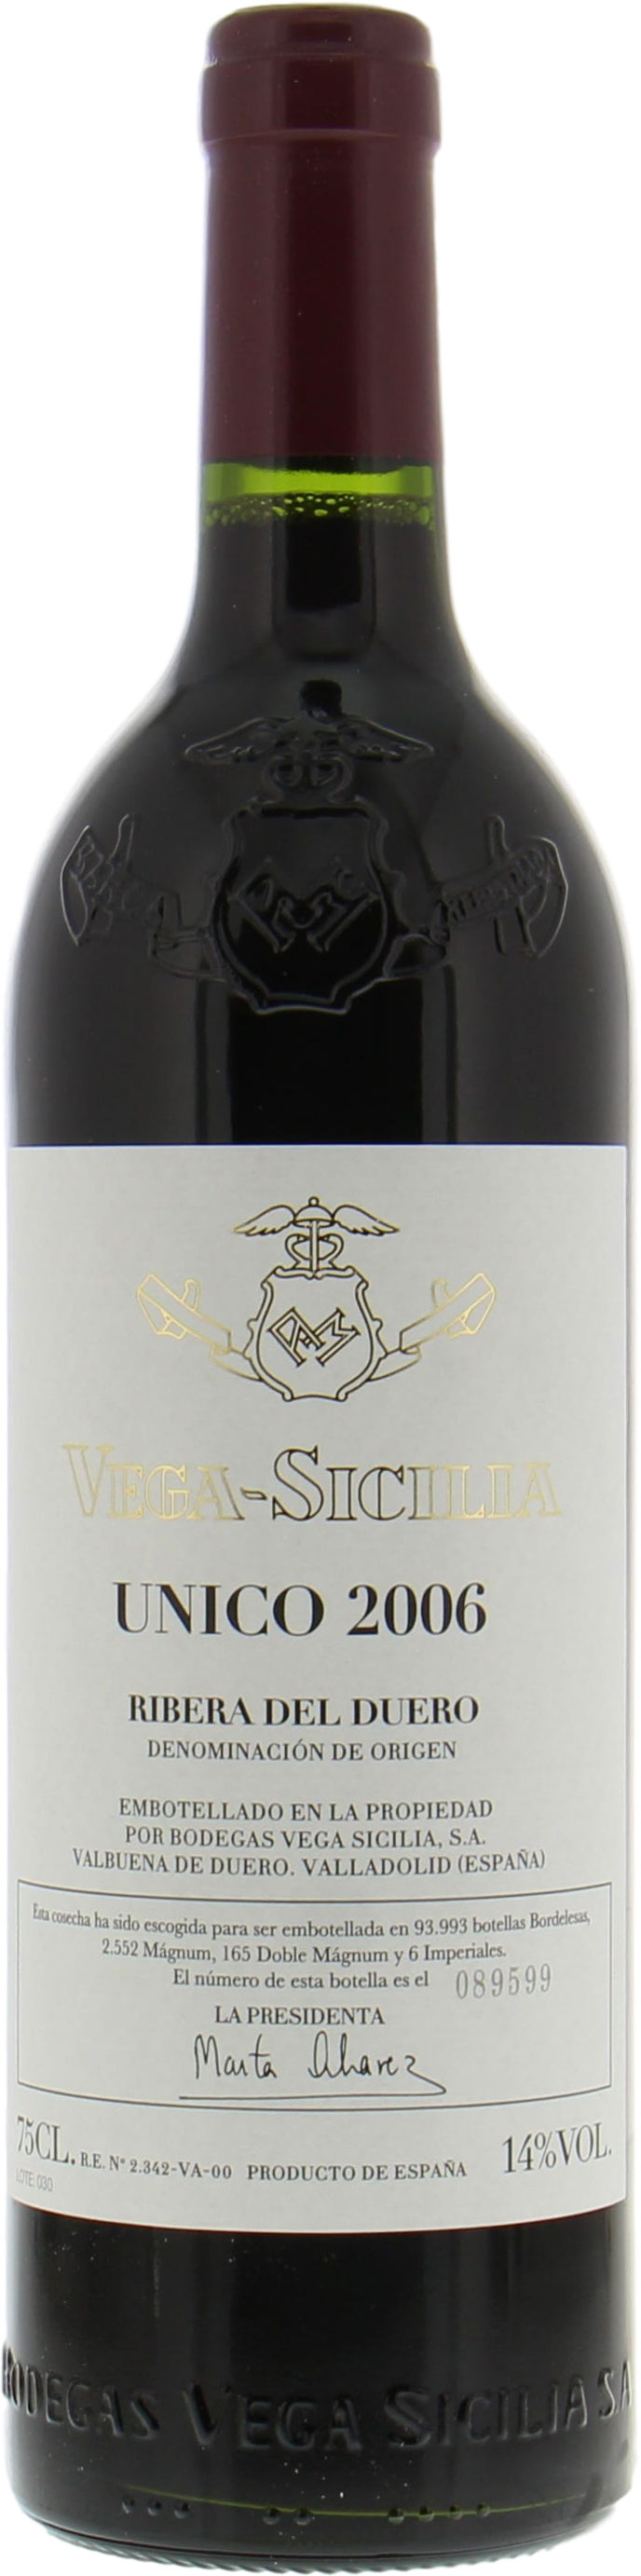 Vega Sicilia - Unico 2006 Perfect